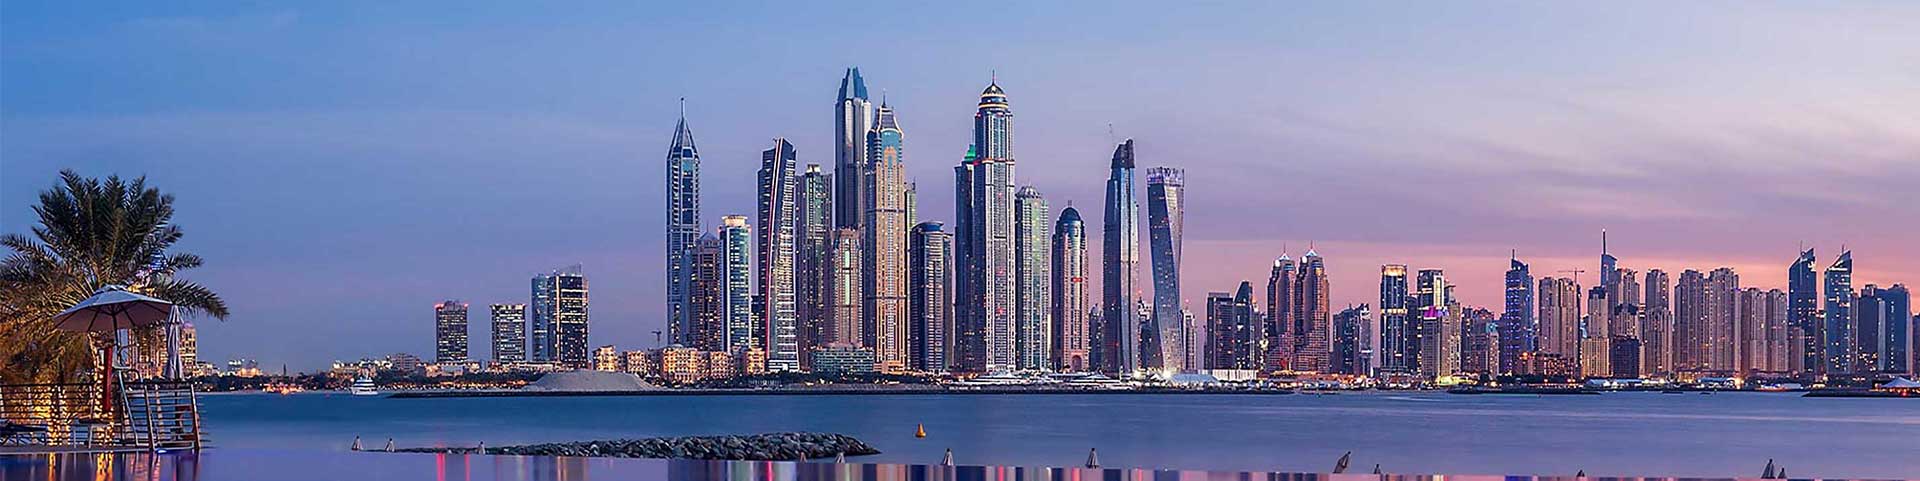 Real Estate Company in Dubai